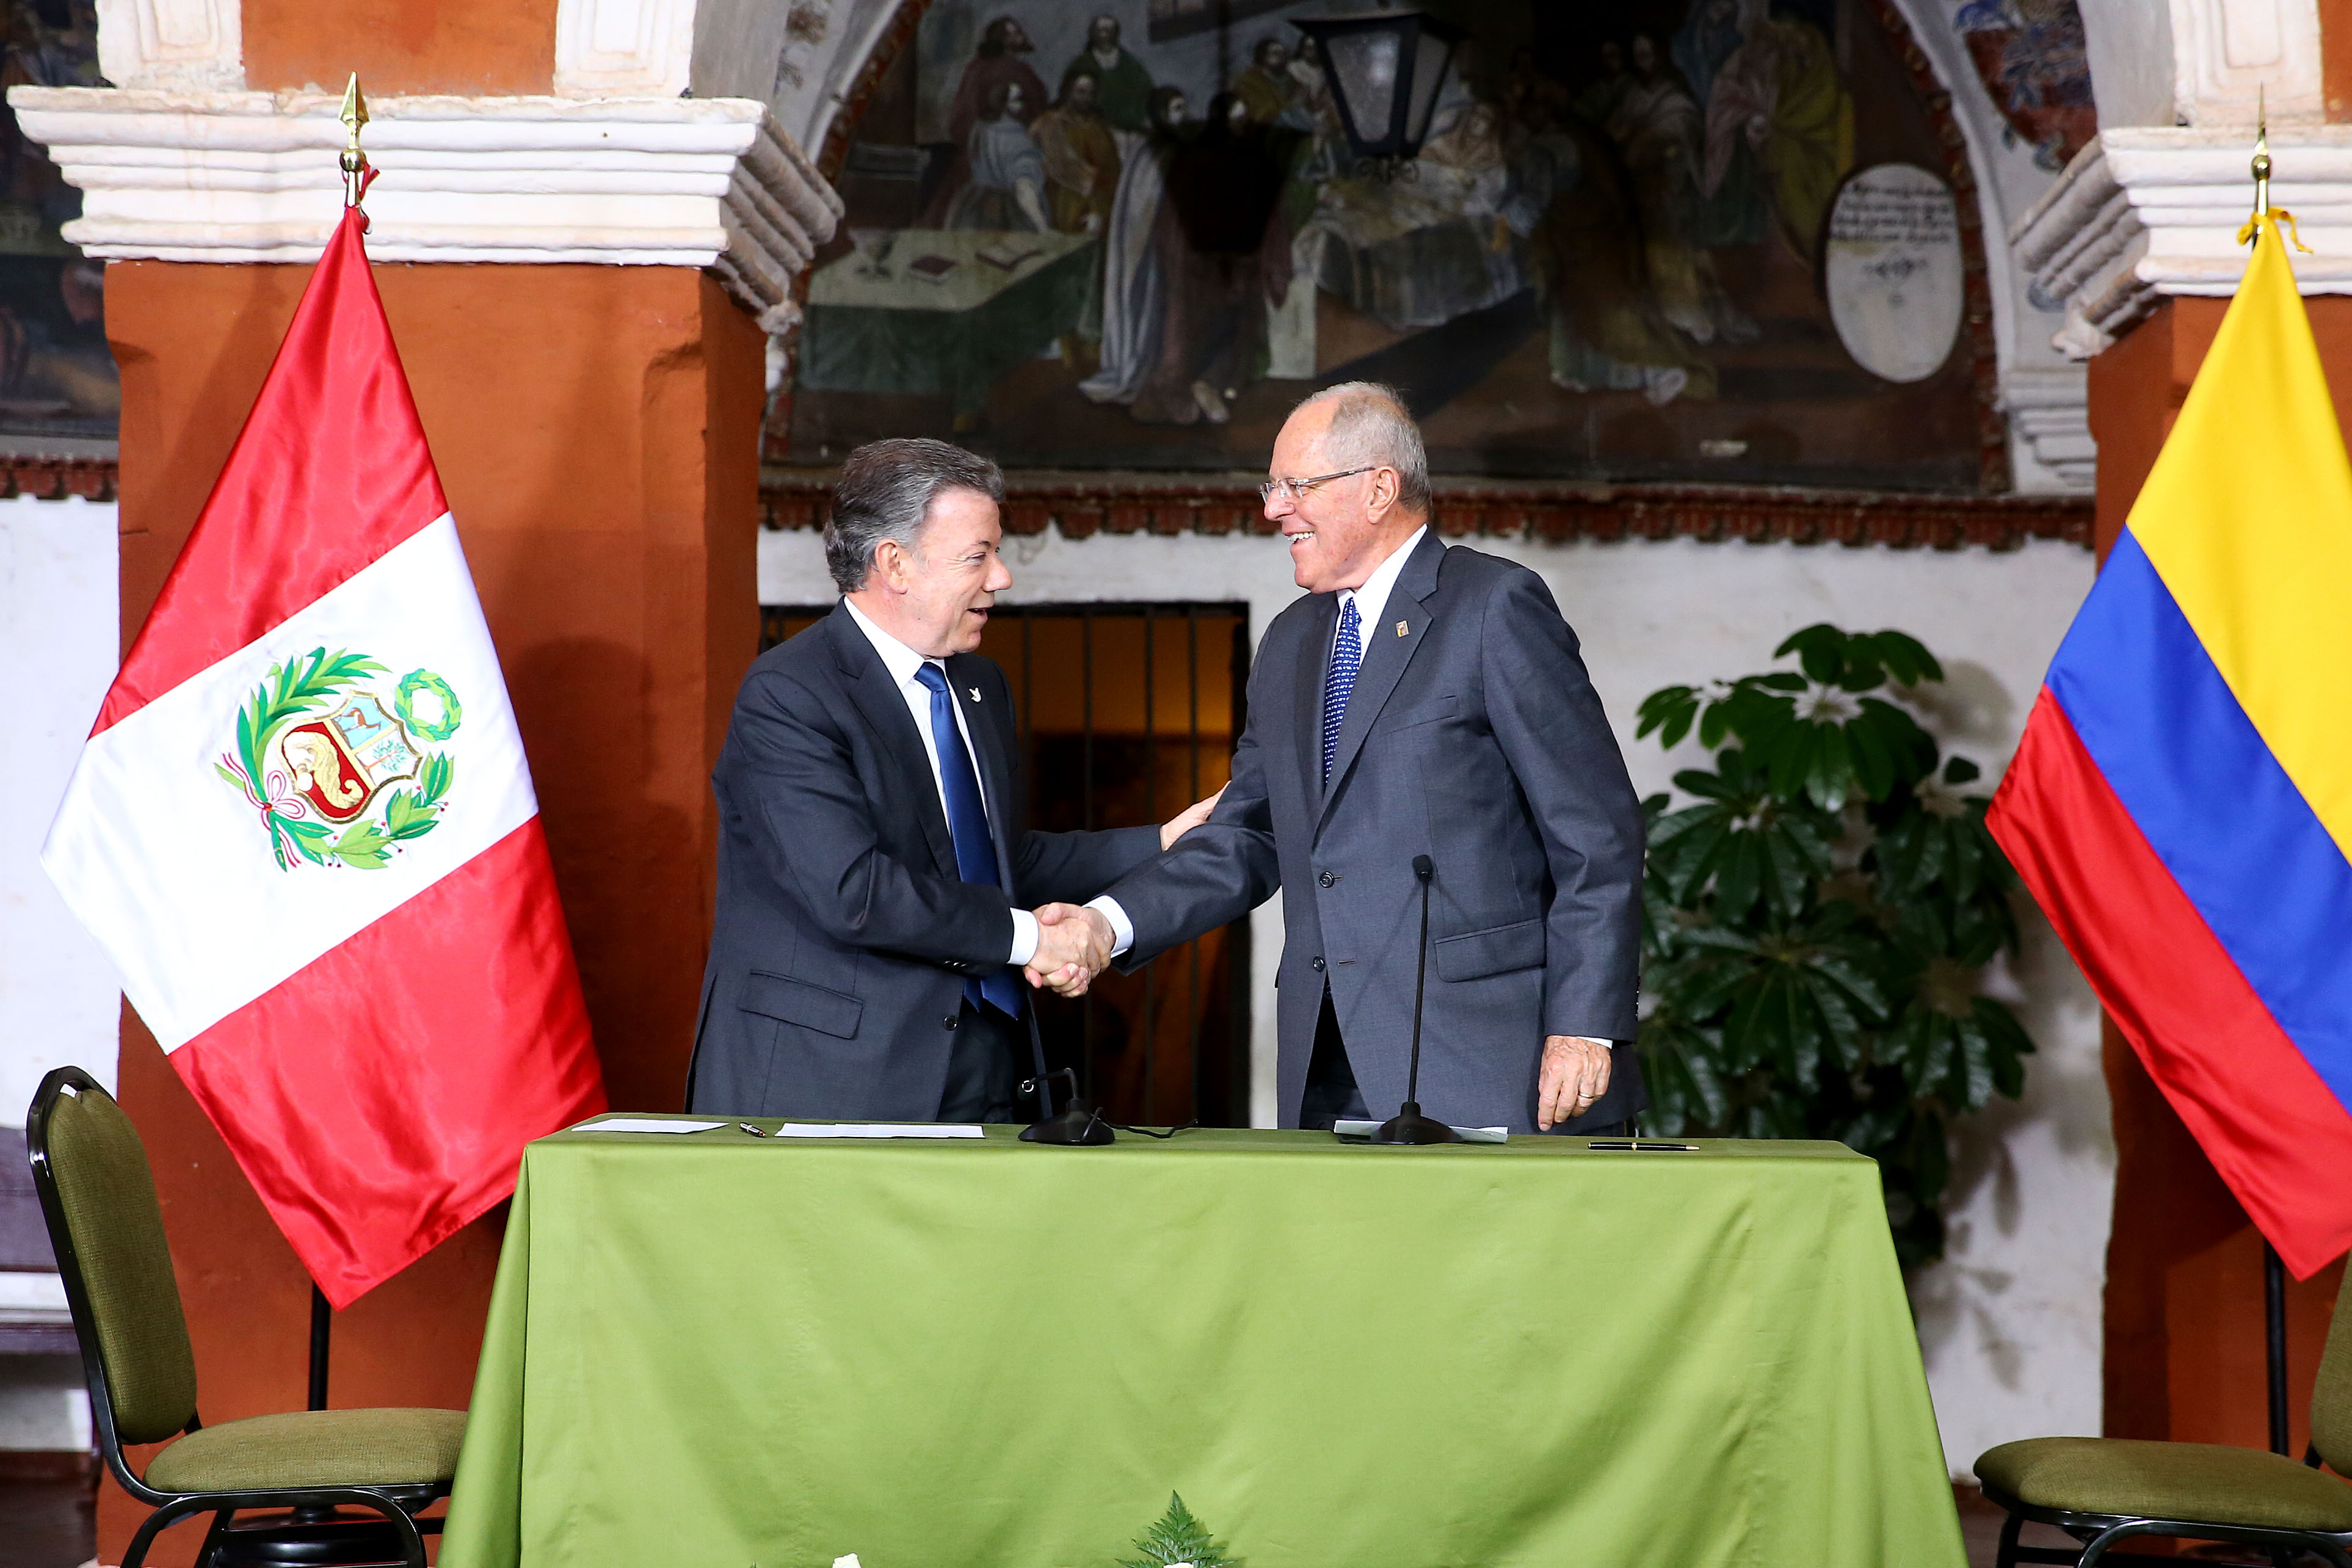 Presidentes de la República de Colombia, Juan Manuel Santos Calderón, y de la República del Perú, Pedro Pablo Kuczynski Godard